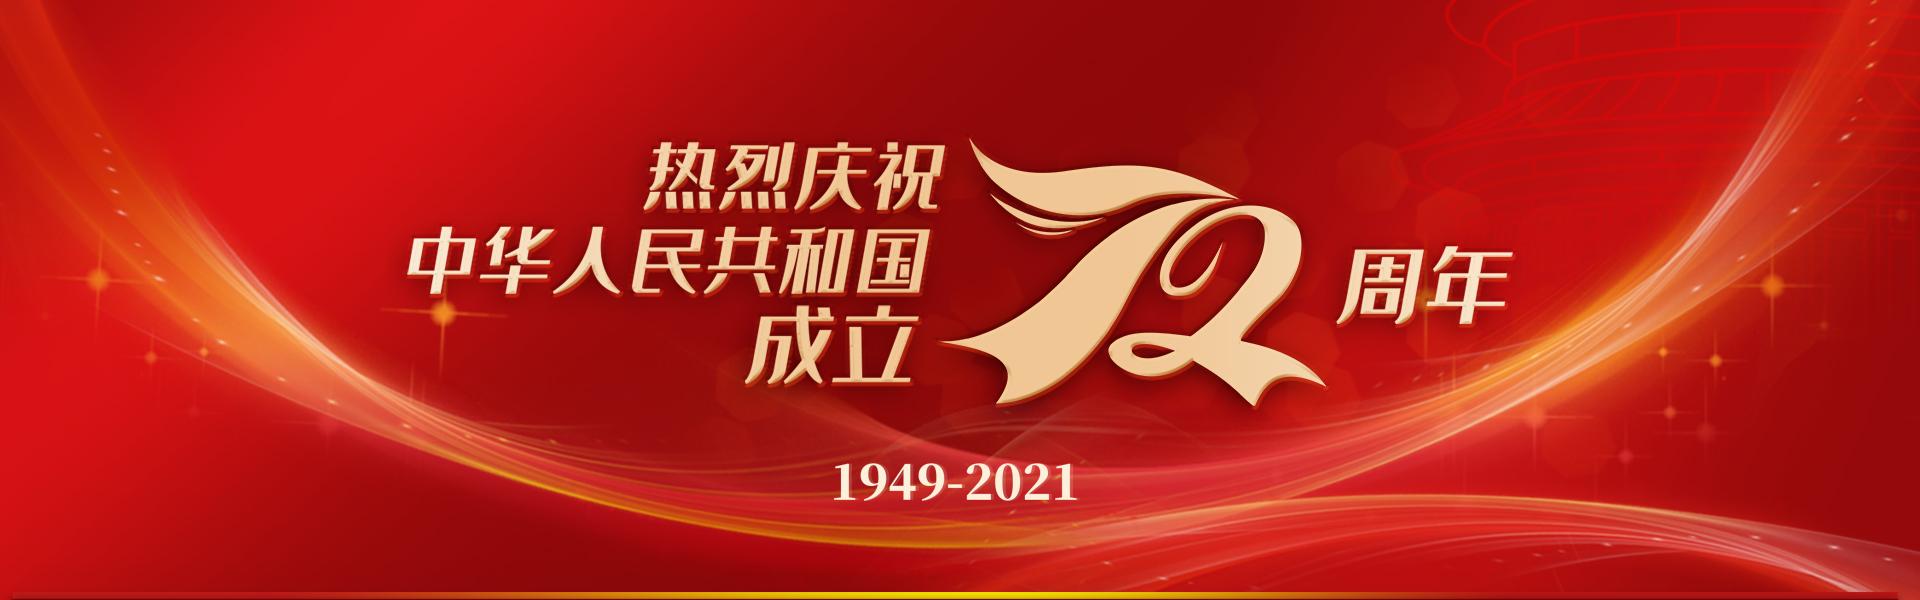 熱烈慶祝中華人民共和國成立72周年